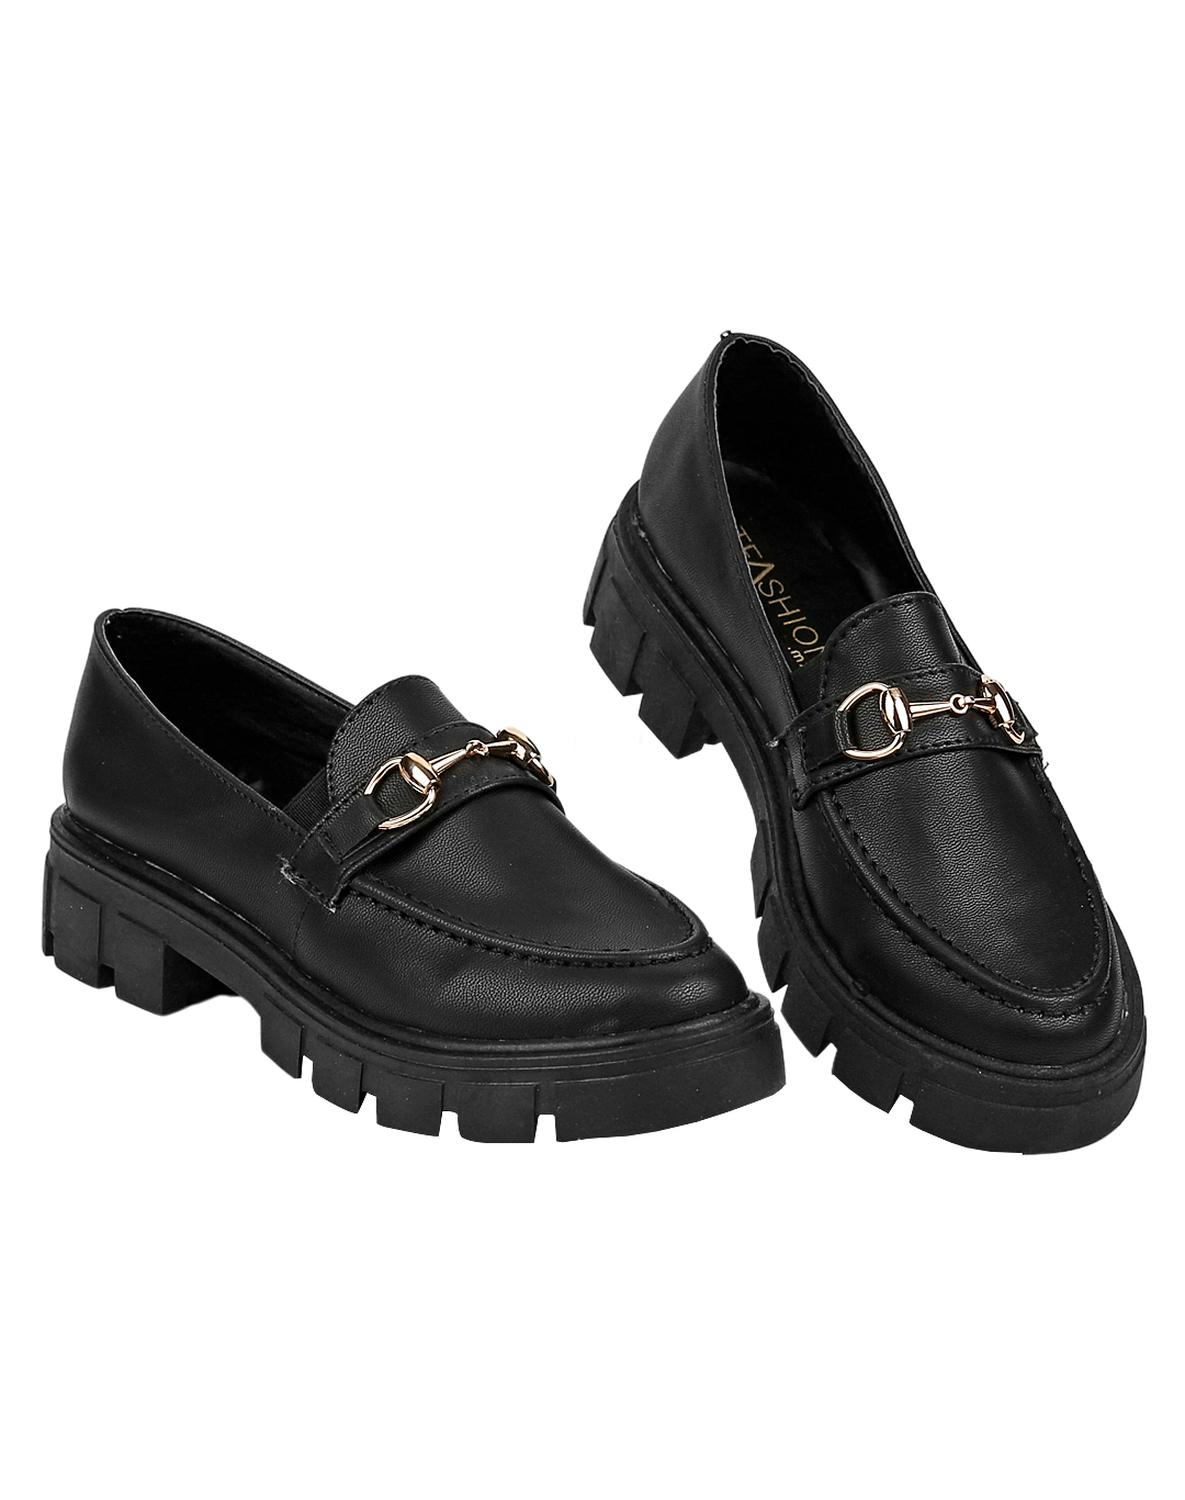 Zapatos de Salón Mujer Negro Multicolor Talón 12 CM Perno Y Piel Sintético